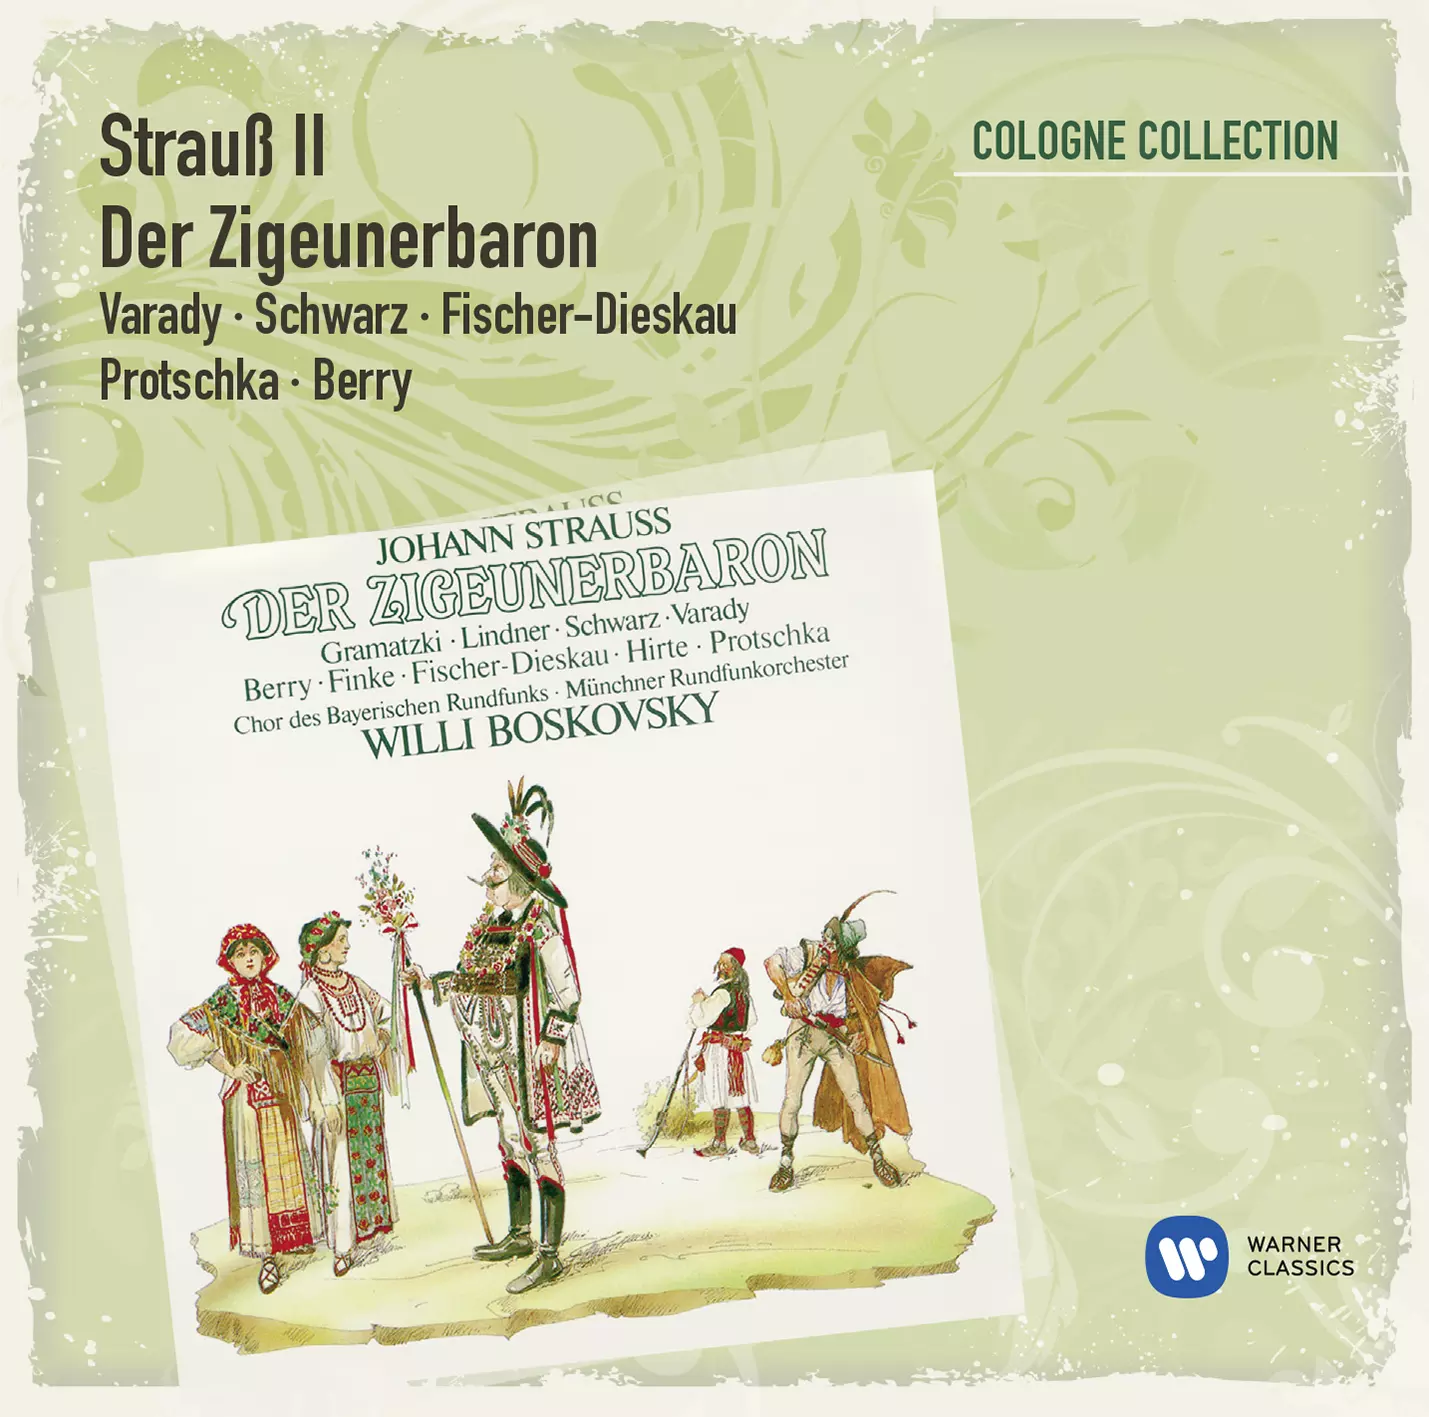 Strauss II: Der Zigeunerbaron